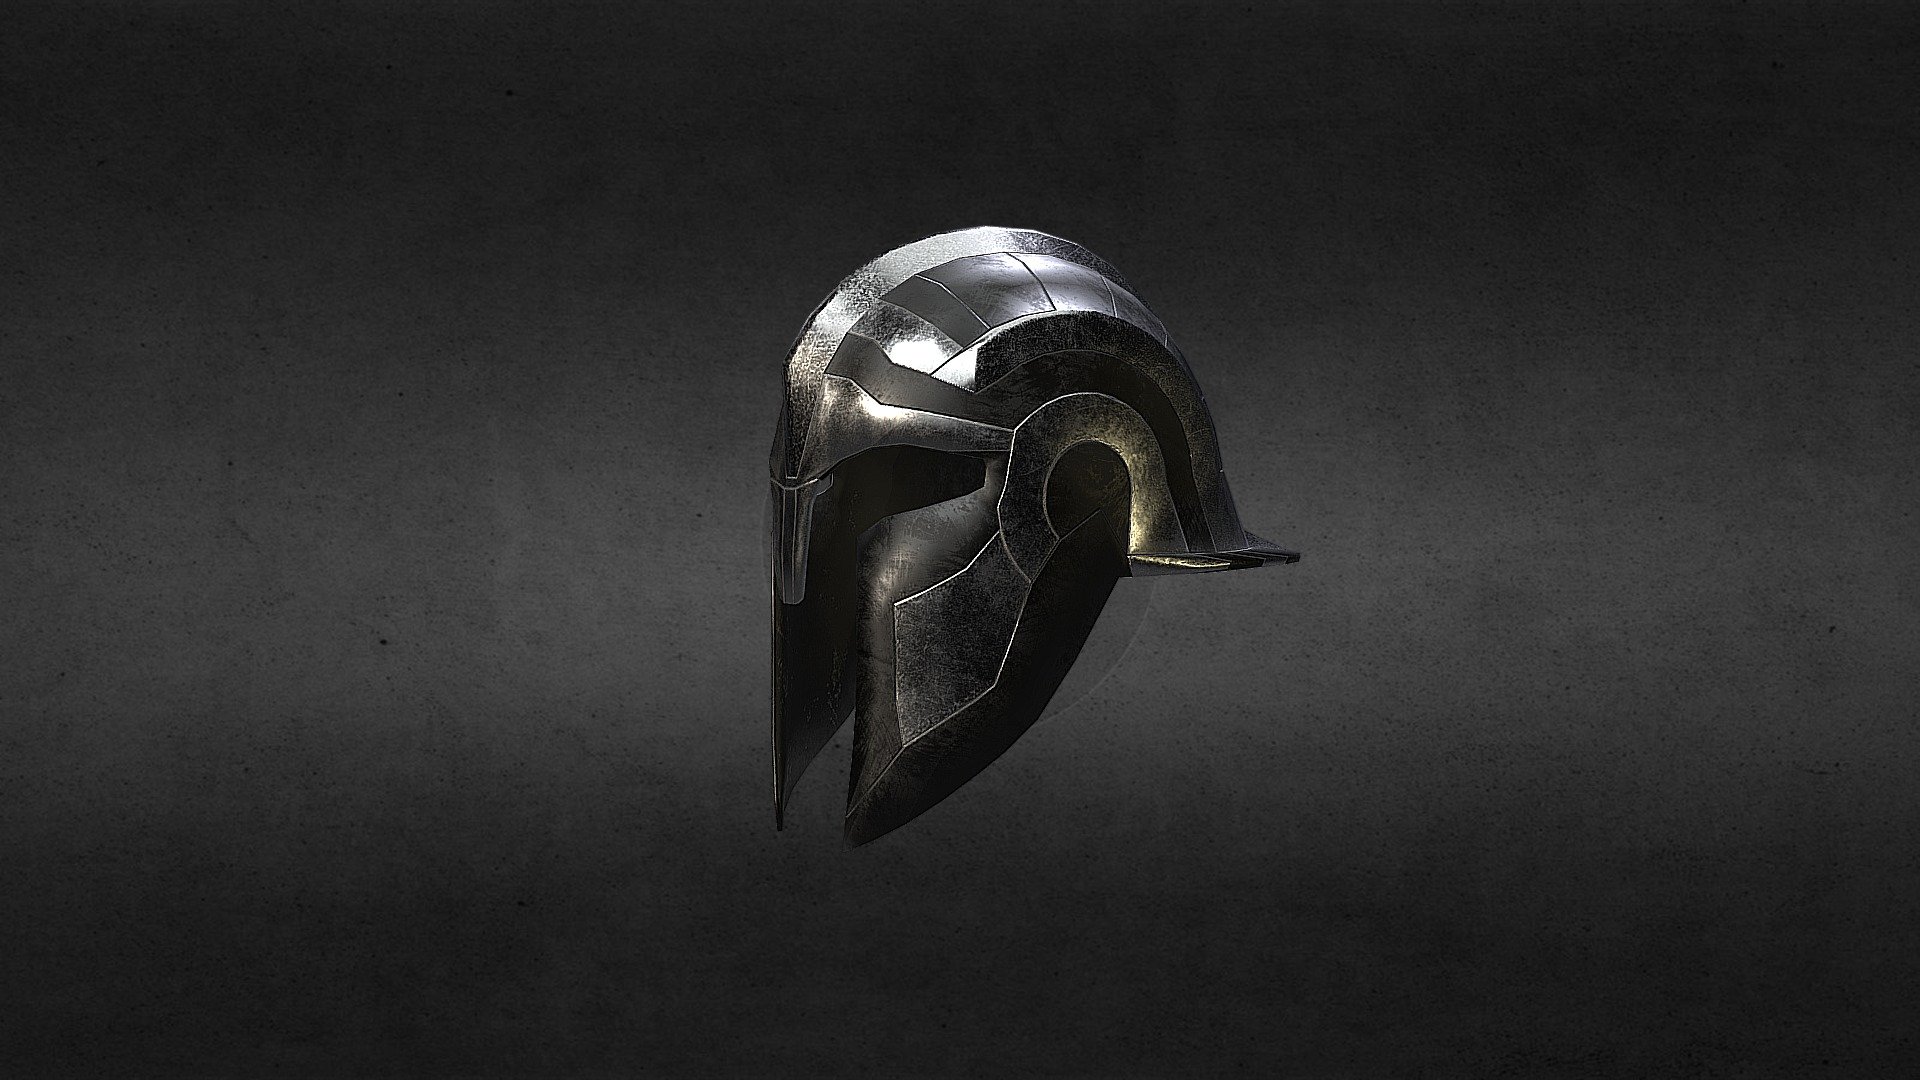 Greek helmet